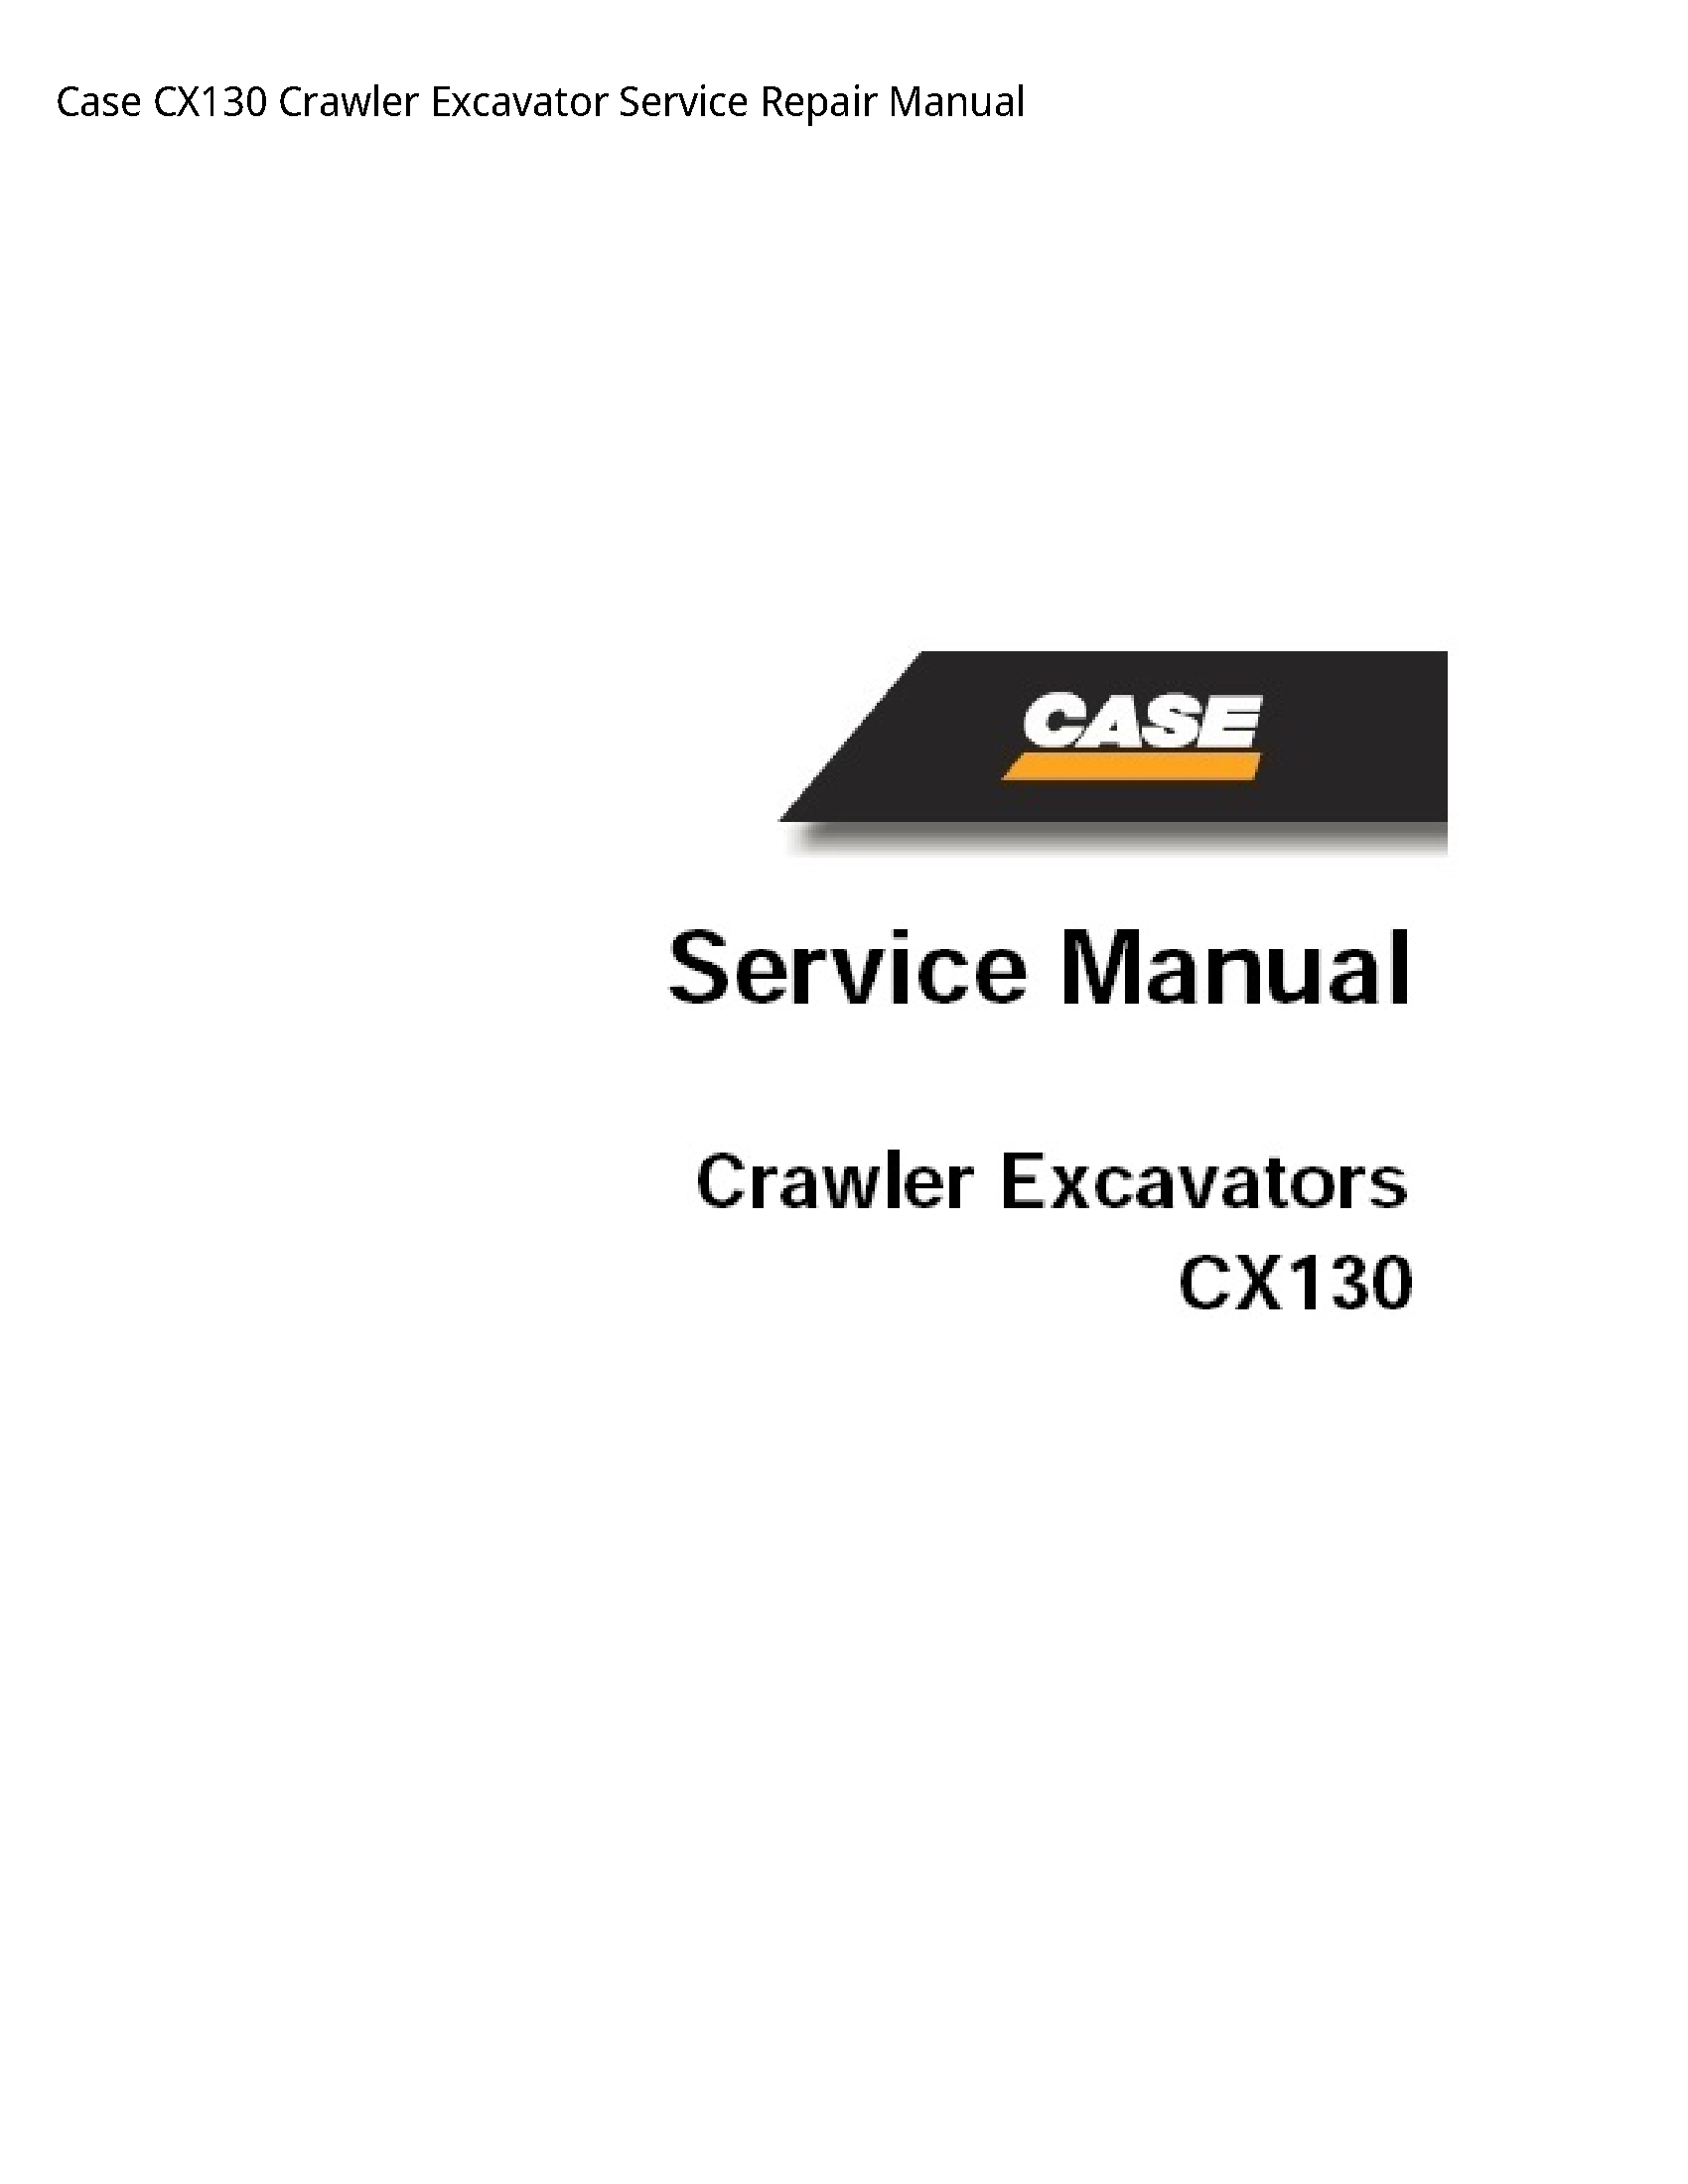 Case/Case IH CX130 Crawler Excavator manual